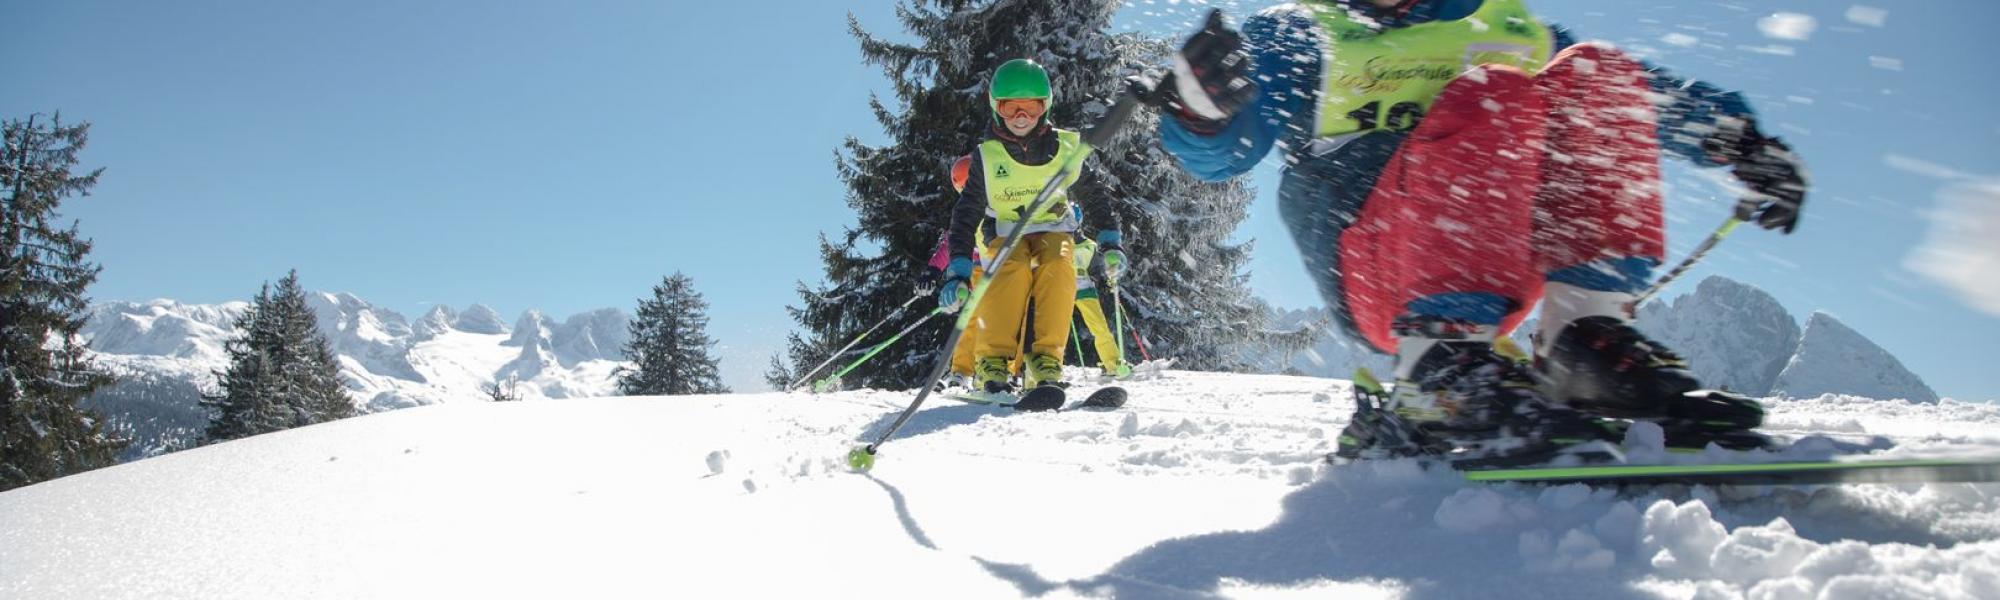 Carving-Kinder-Skikurs in der Skischule Gosau.